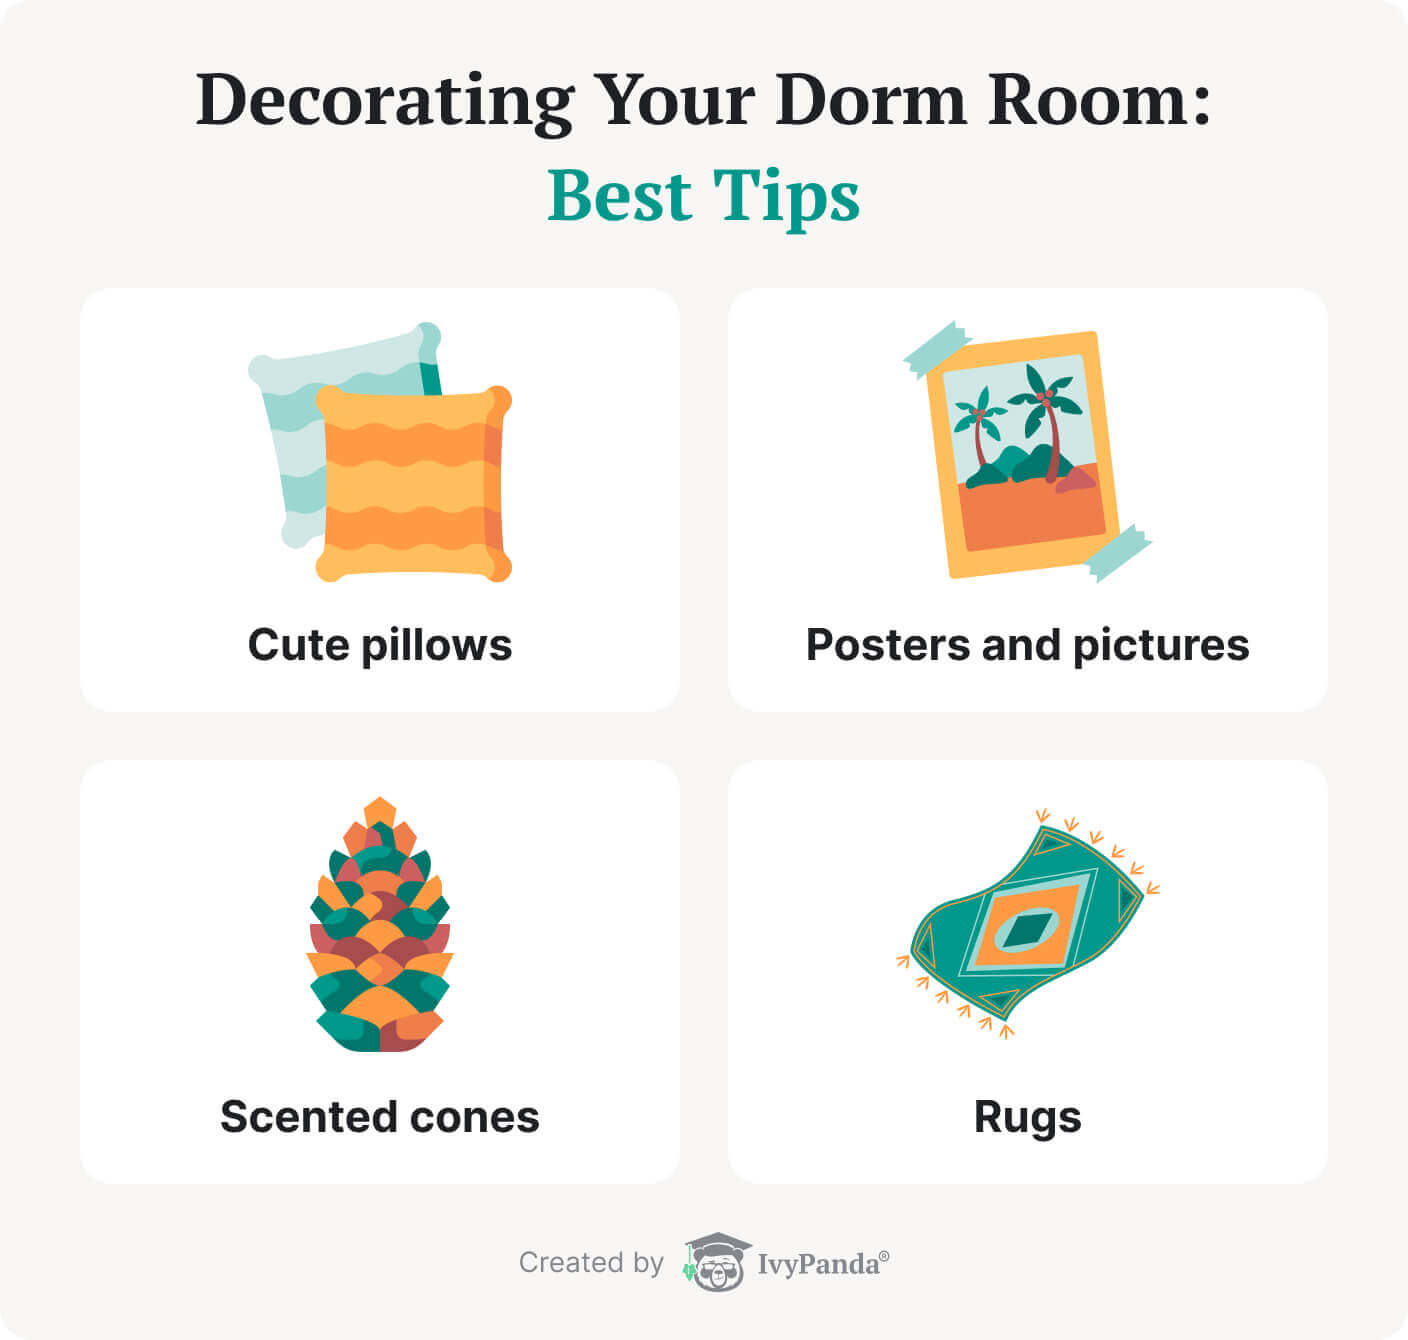 La imagen enumera algunas de las mejores ideas de decoración de dormitorios universitarios.